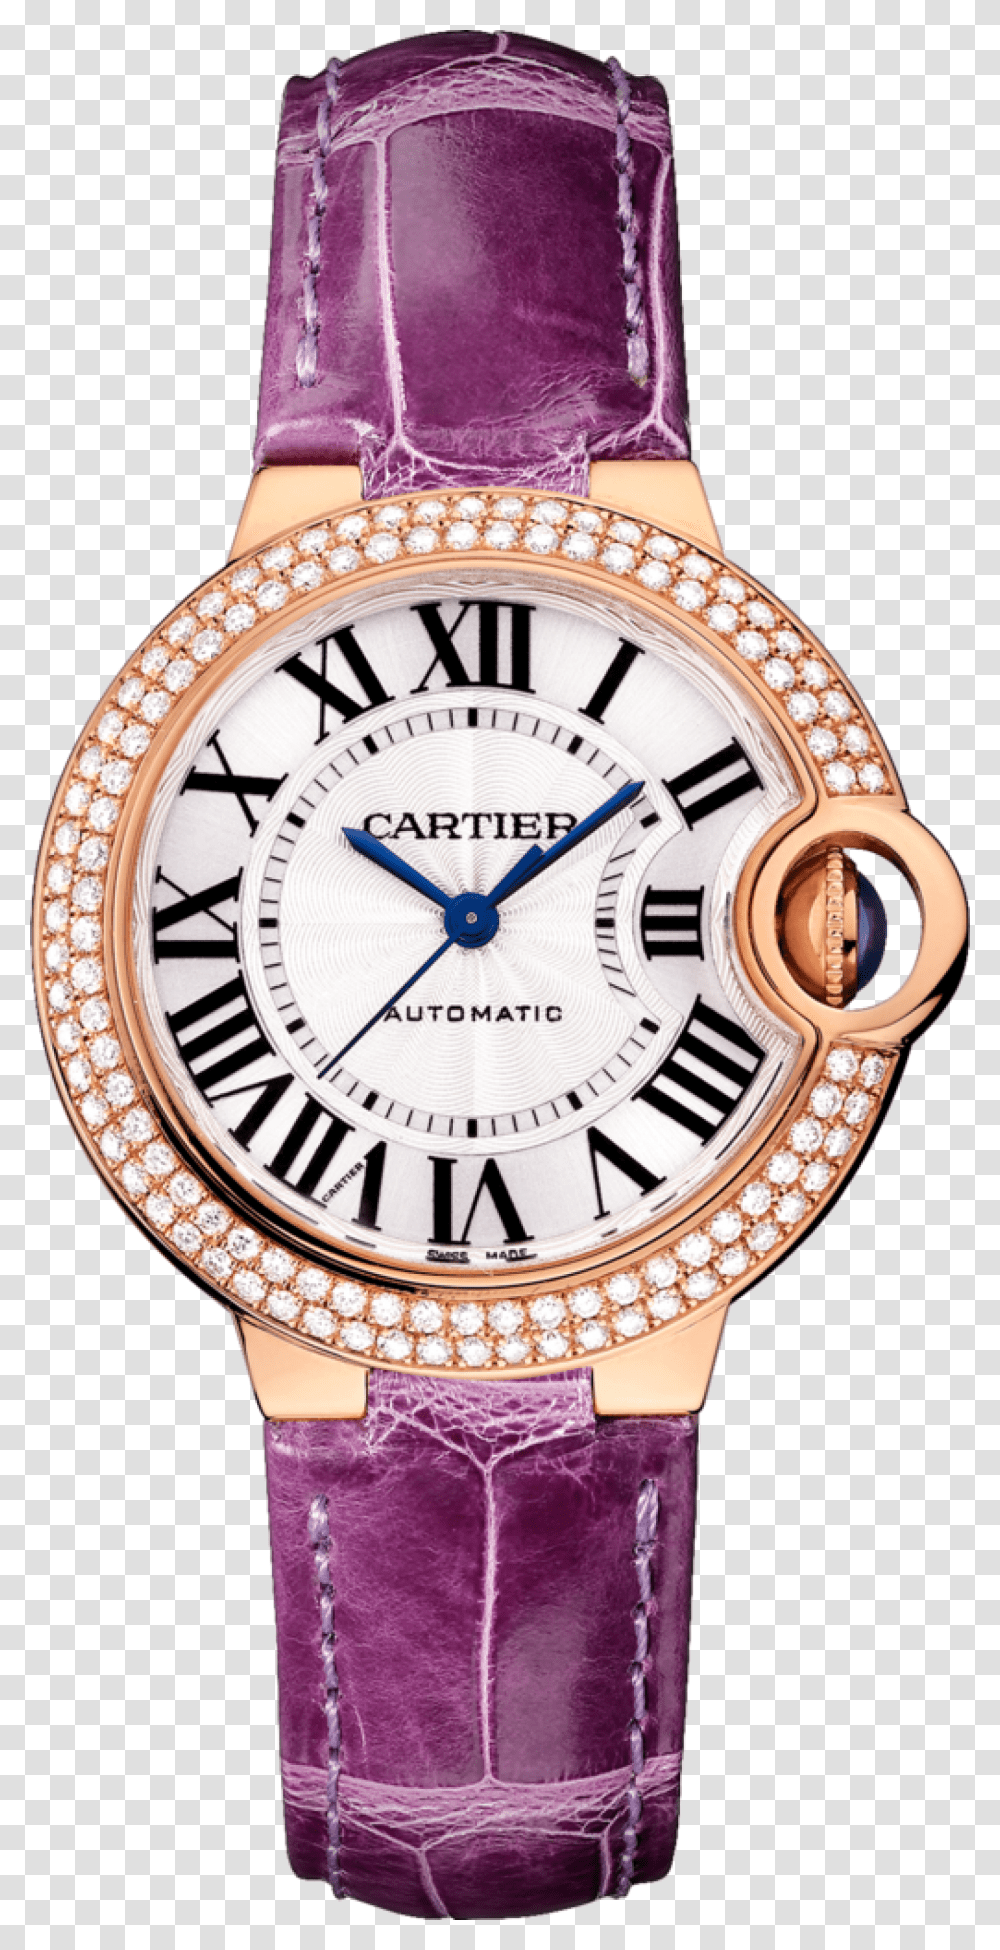 Cartier Ballon Bleu De Cartier Rose Gold Watch Watches, Wristwatch, Clock Tower, Architecture, Building Transparent Png